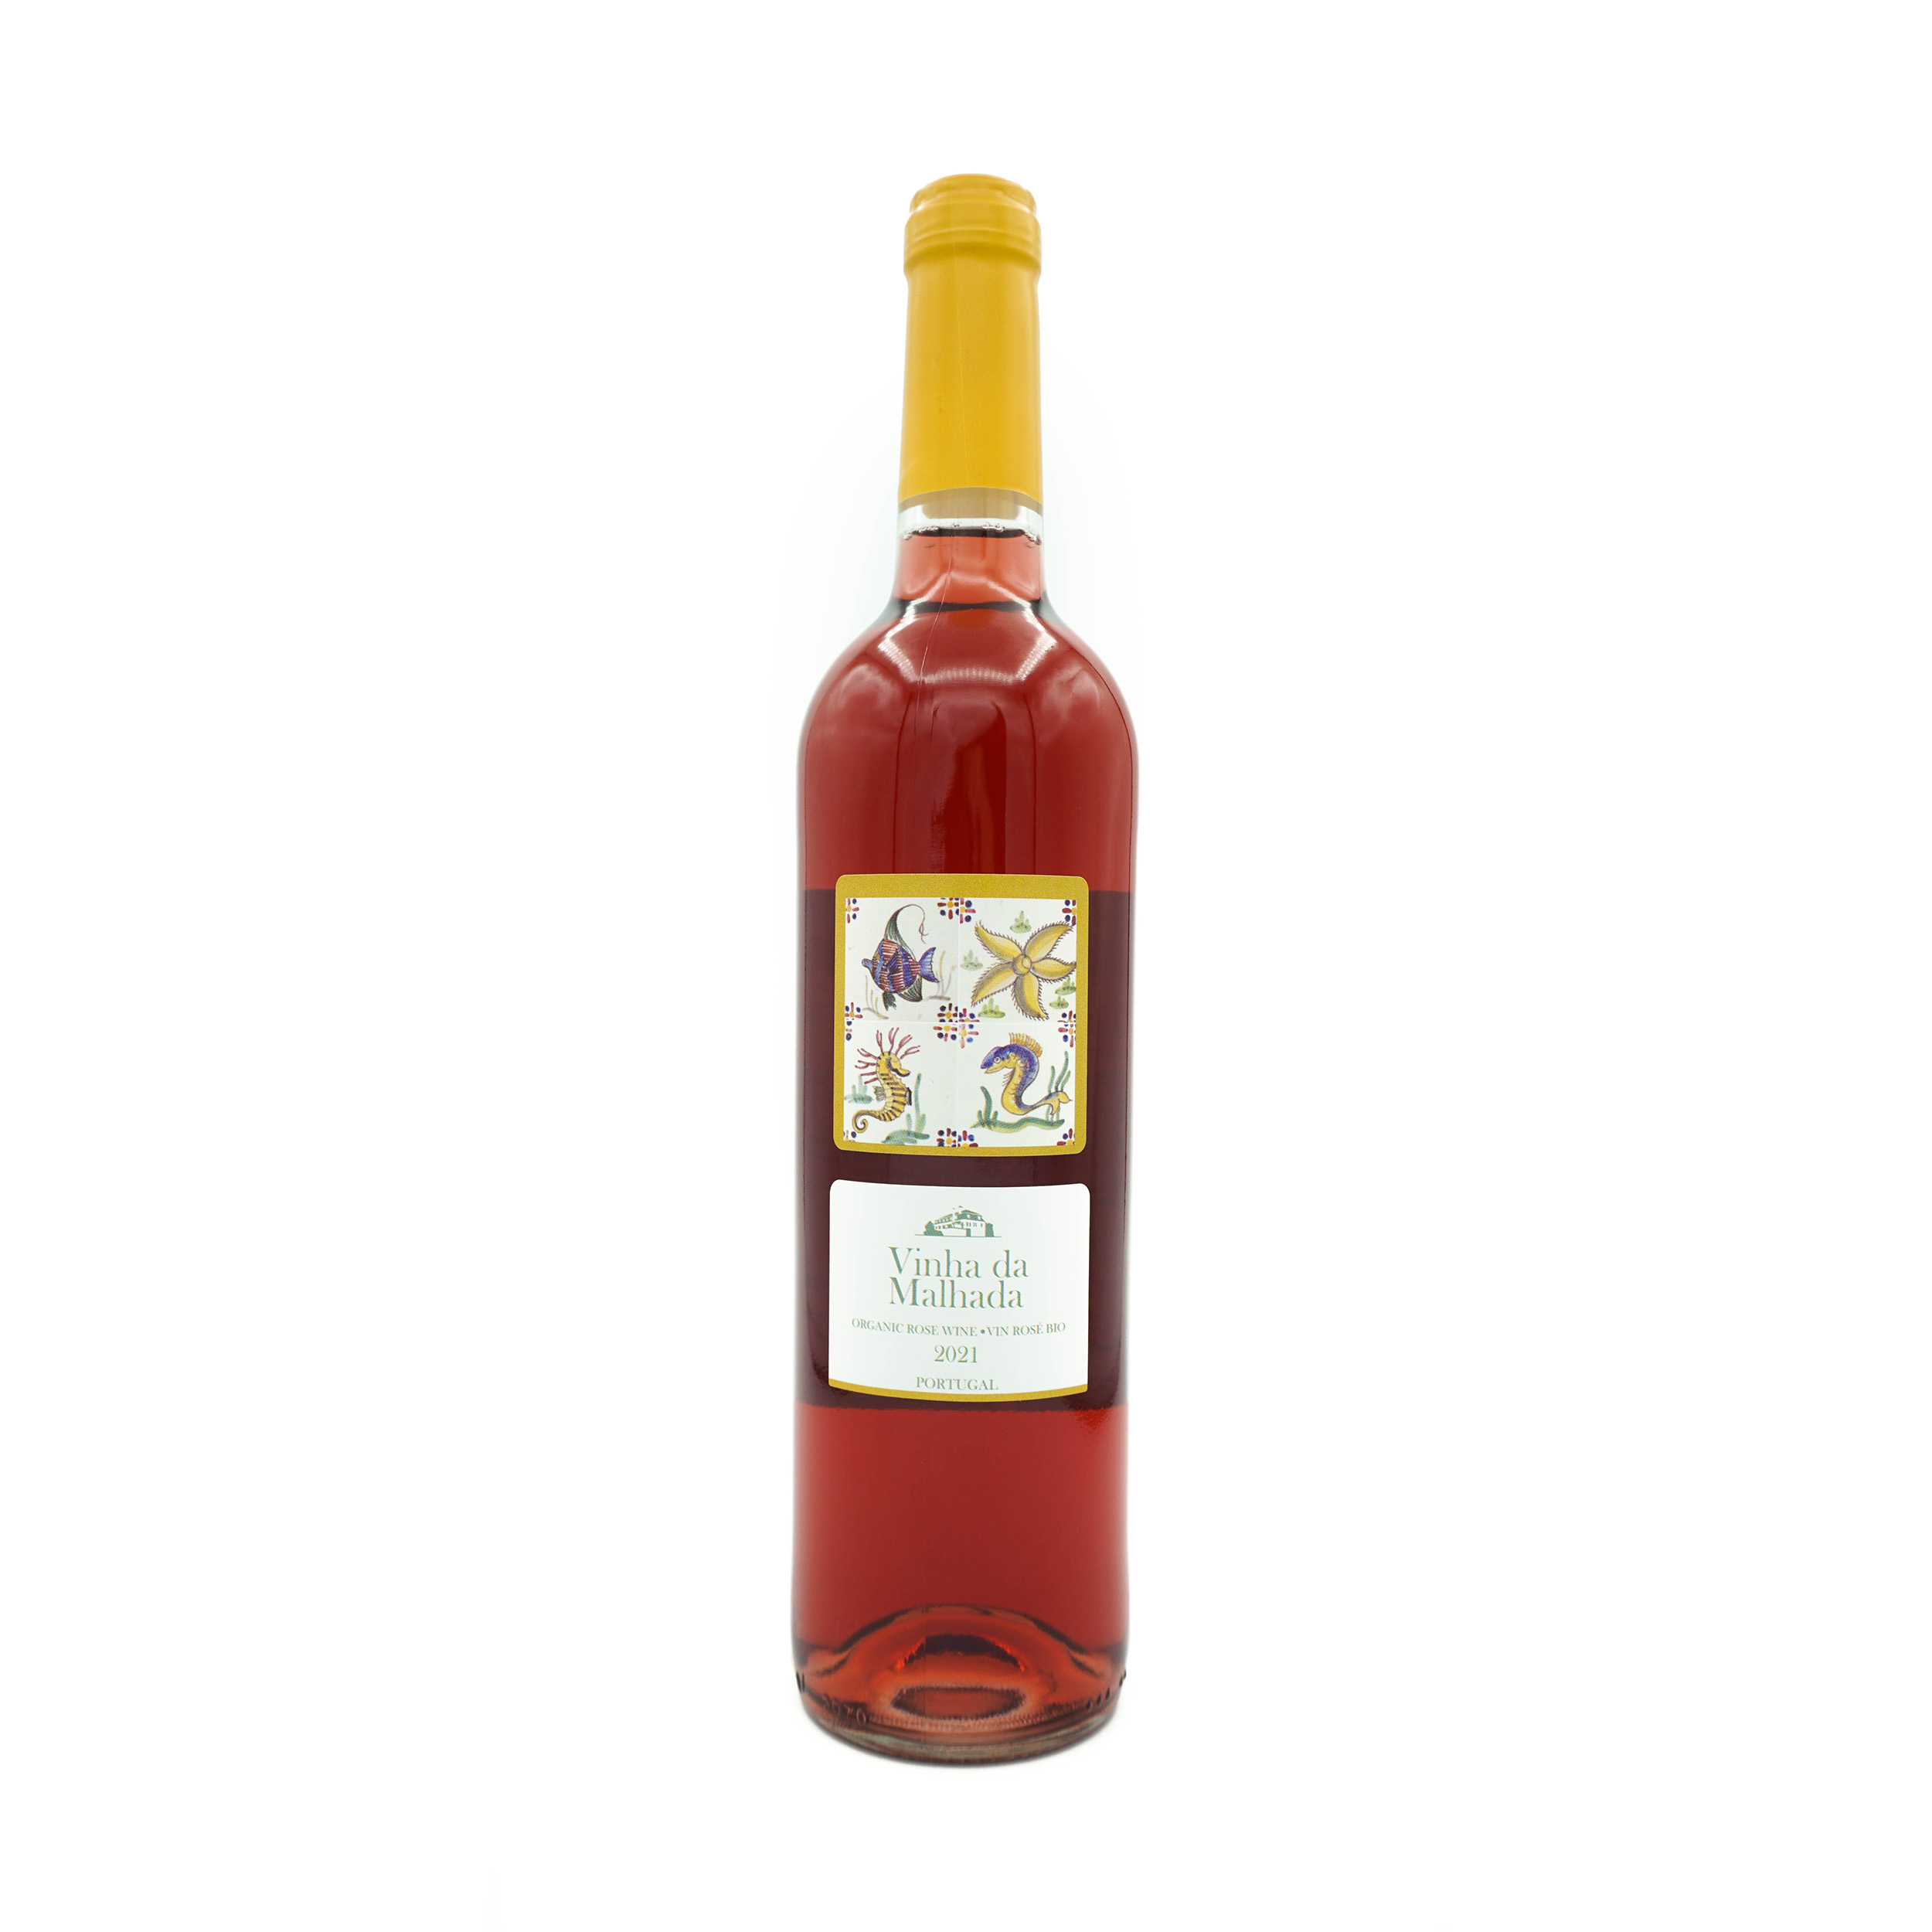 Quinta do Montalto Malhada Rose wine